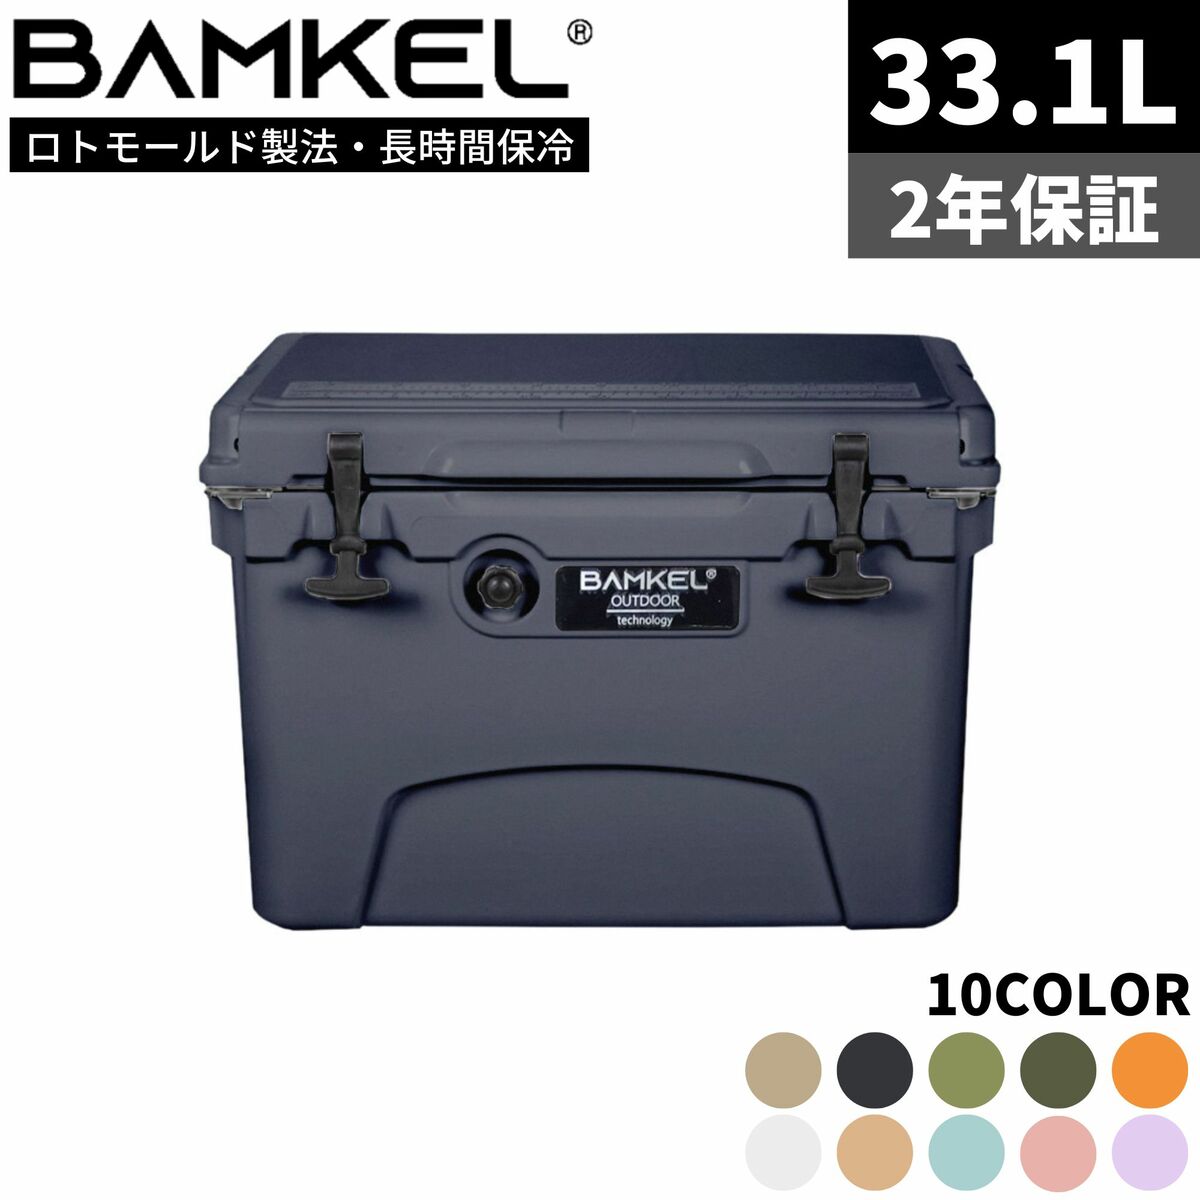 BAMKEL バンケル クーラーボックス 33.1L 長時間 保冷 選べるカラー サイズ 高耐久 ハードクーラー アウトドア キャンプ 韓国ブランド エボニー 正規品